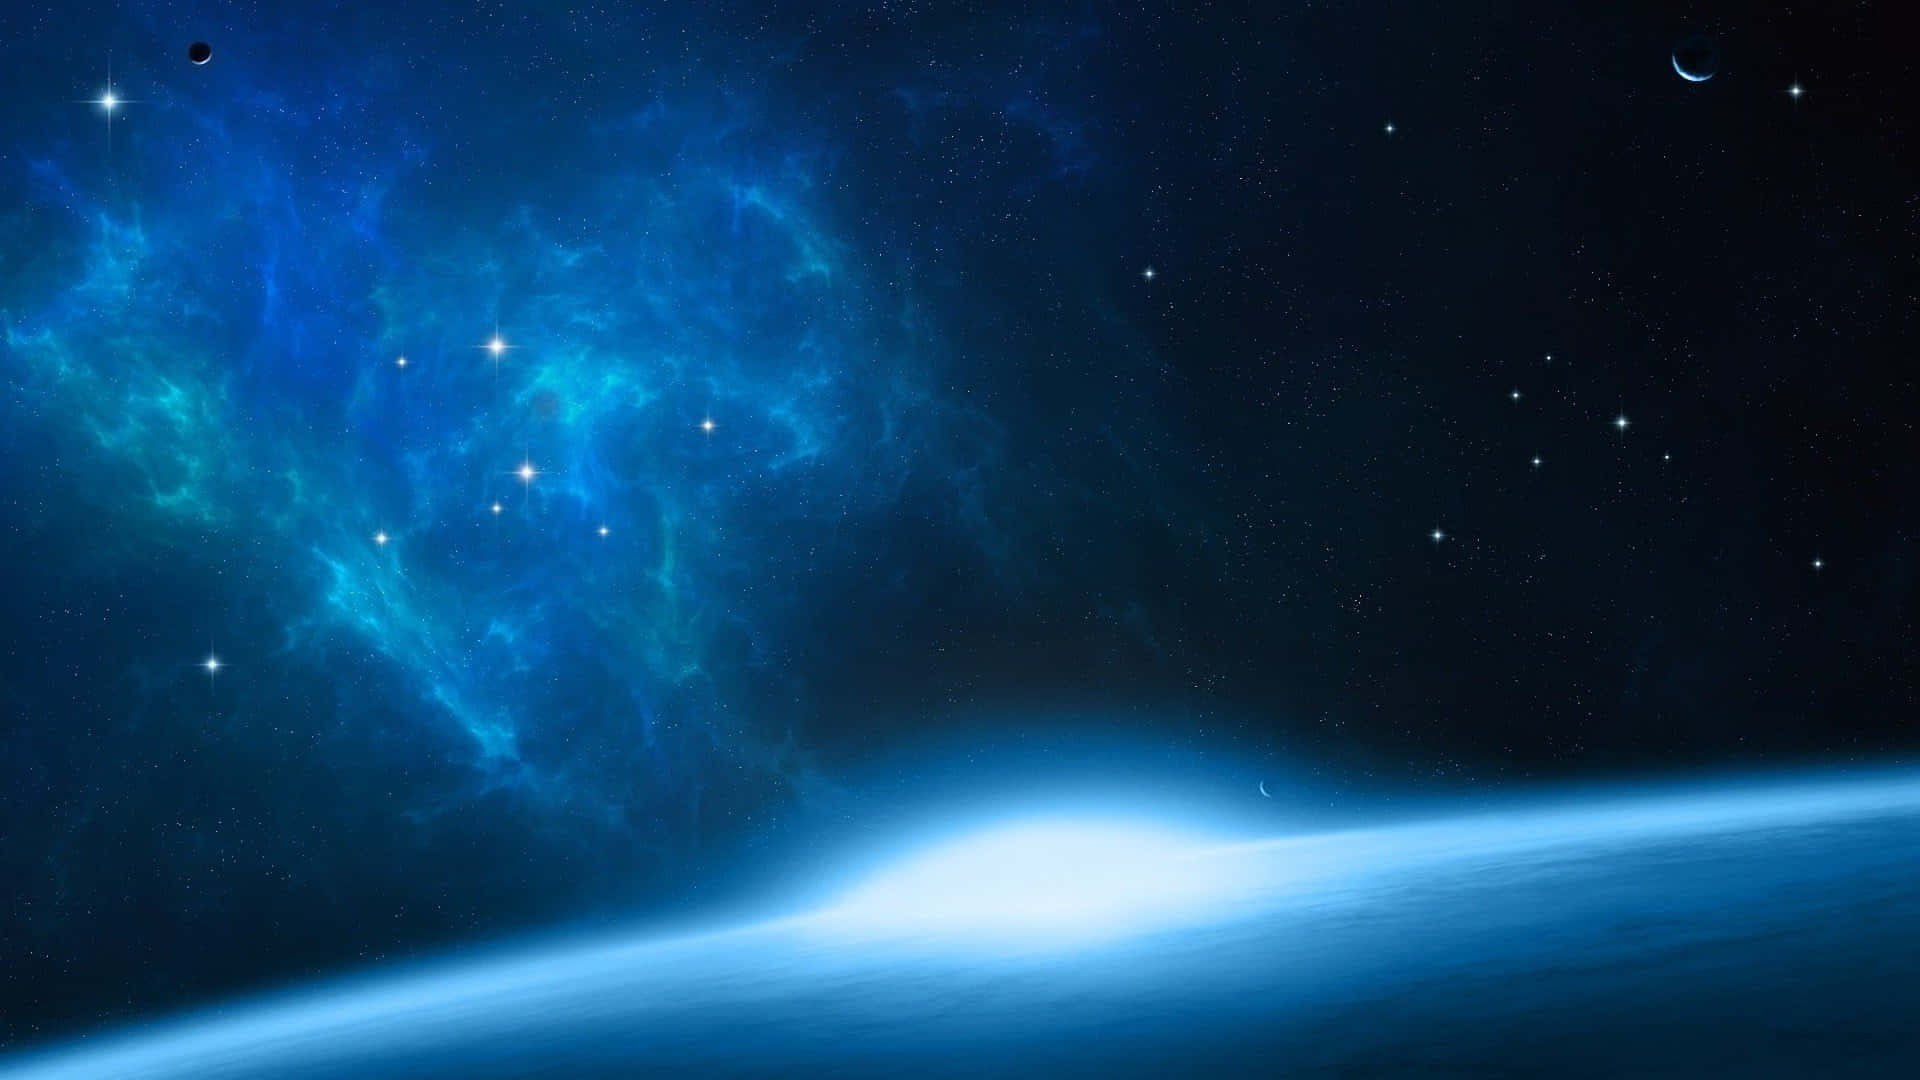 Impresionantevista De La Galaxia En El Espacio Exterior.